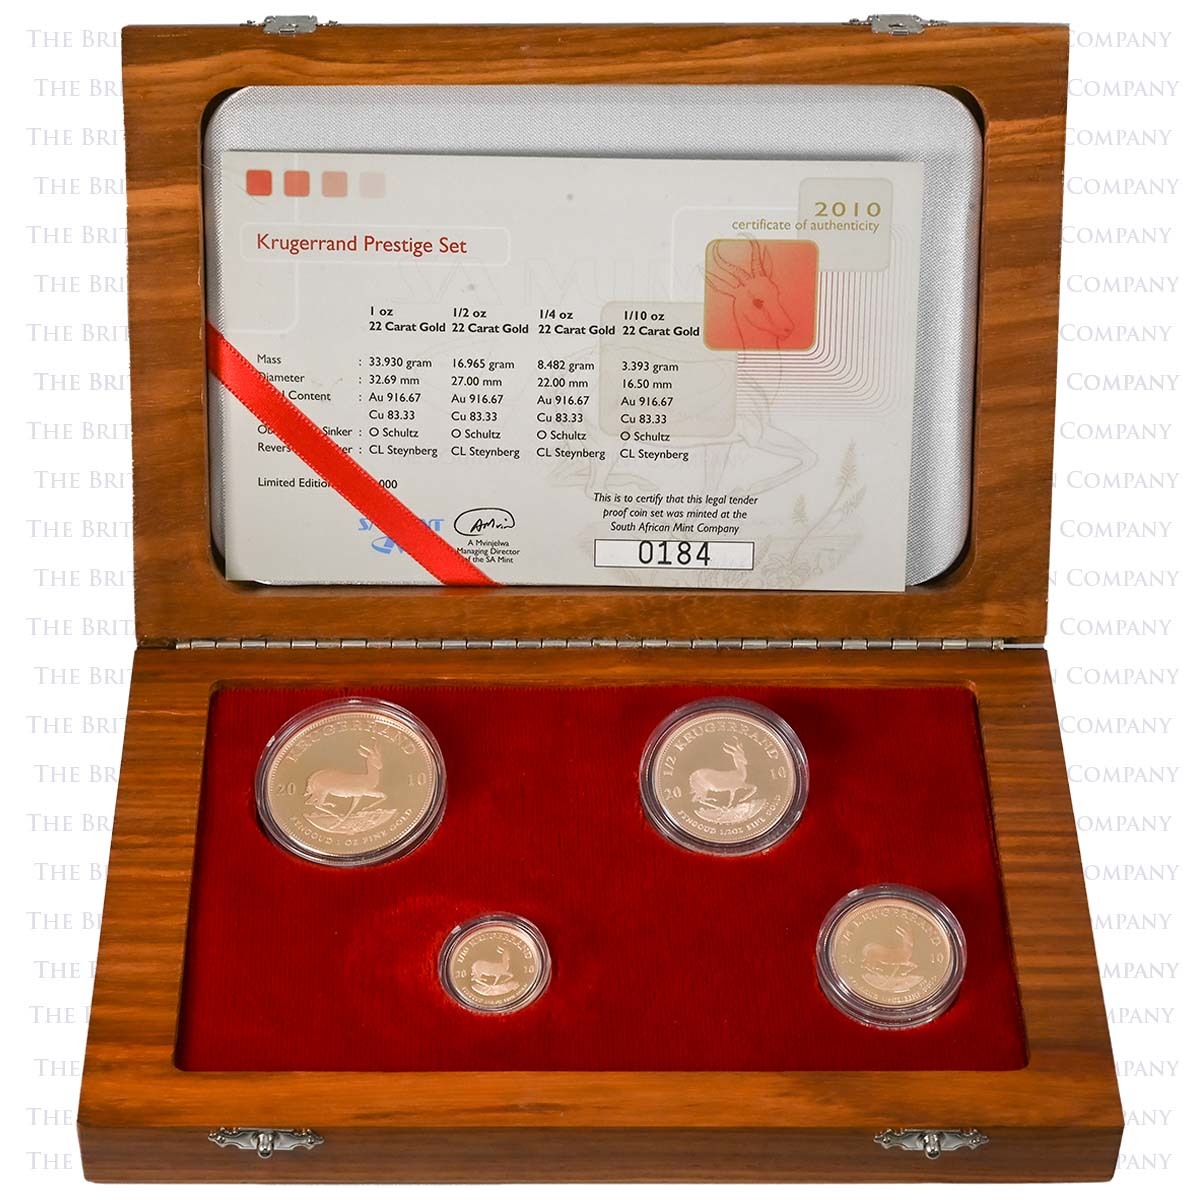 2010 4 Coin Gold Proof Krugerrand Prestige Set Boxed